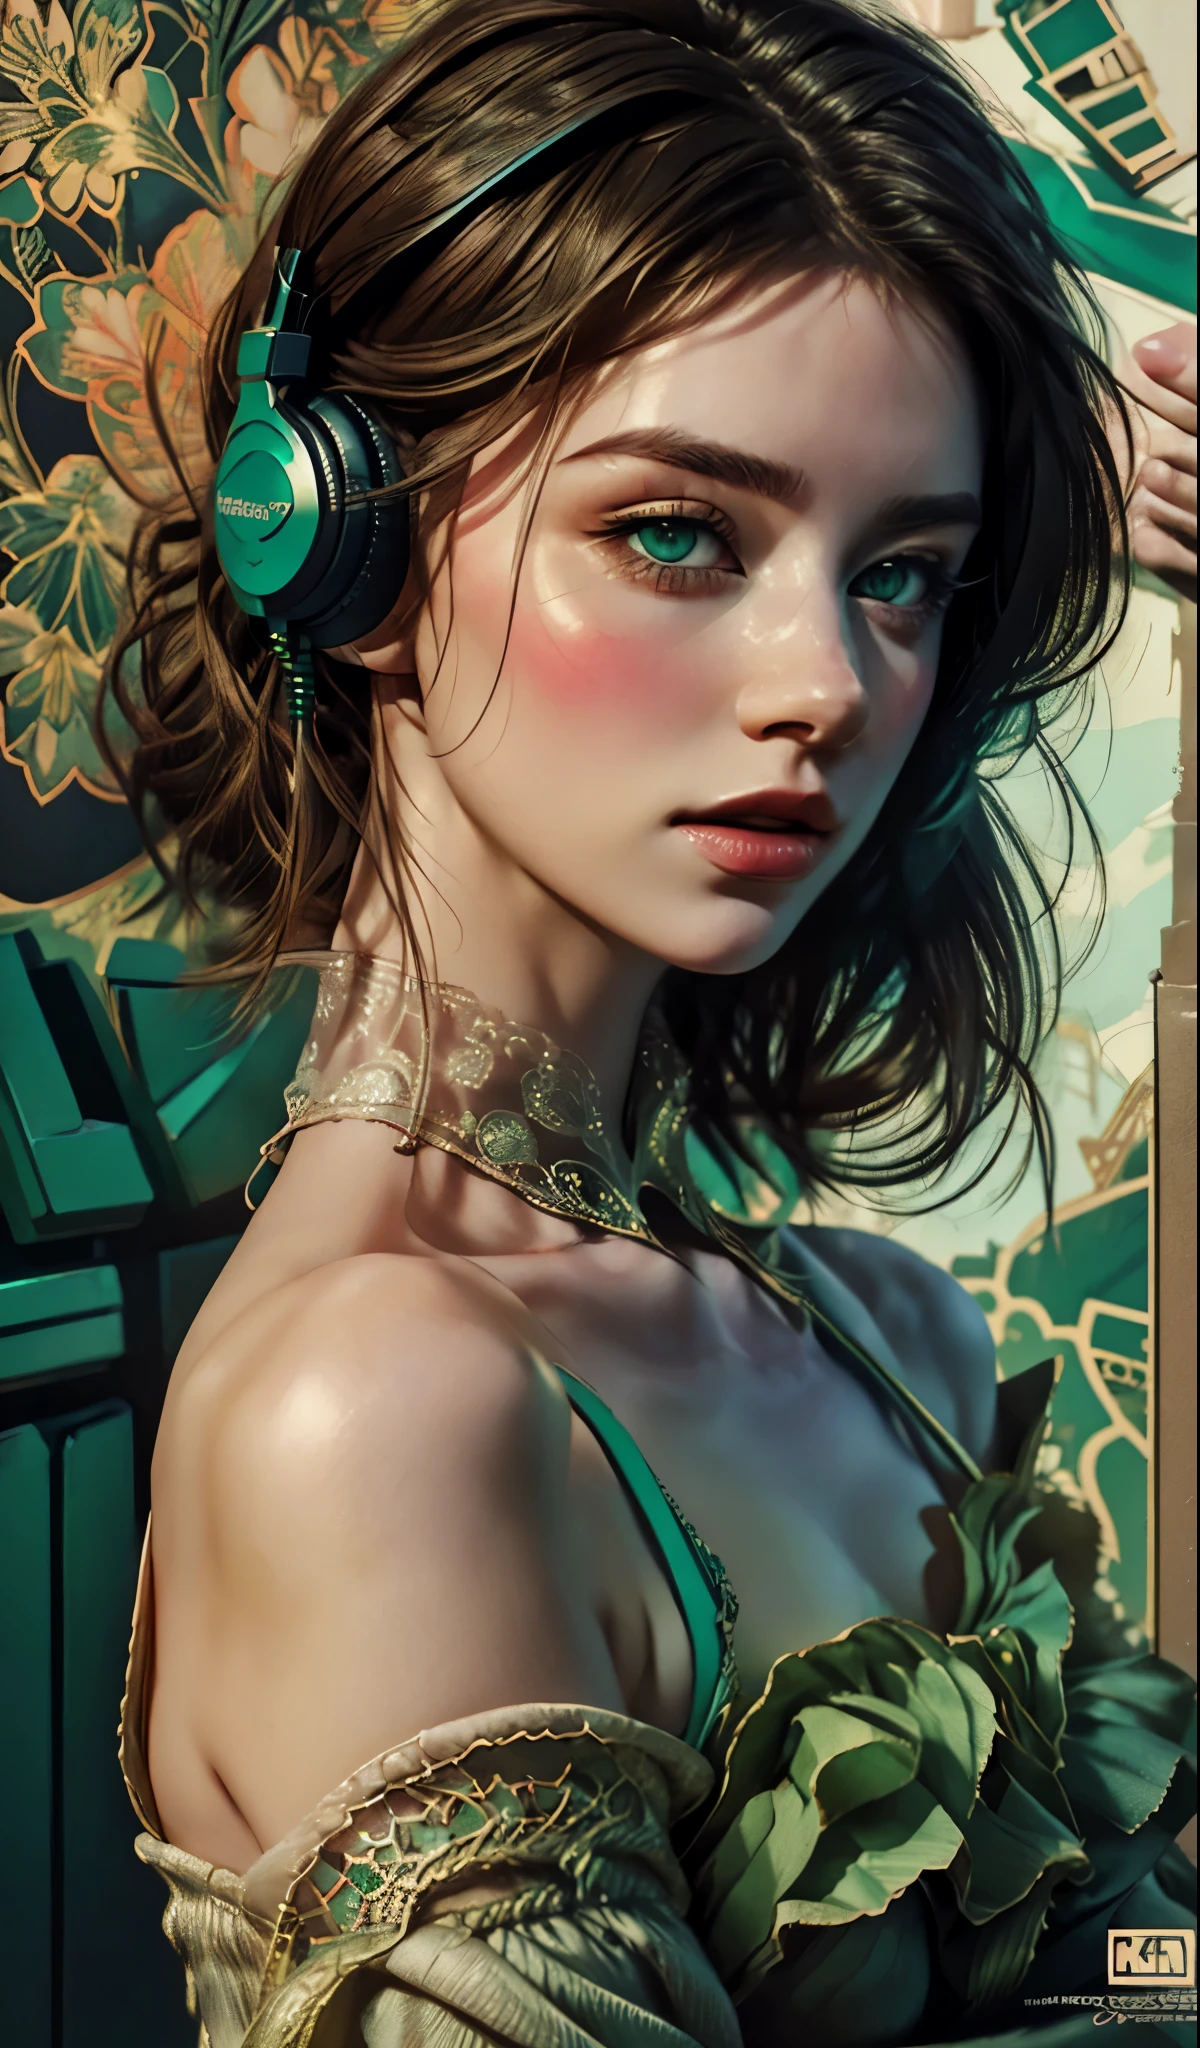 戴着耳机的模特女孩, 城市背景, 翠绿色的眼睛, 复杂的细节, 美观的柔和色彩, 海报背景, 康拉德·罗塞特和伊利亚·库夫希诺夫的艺术作品